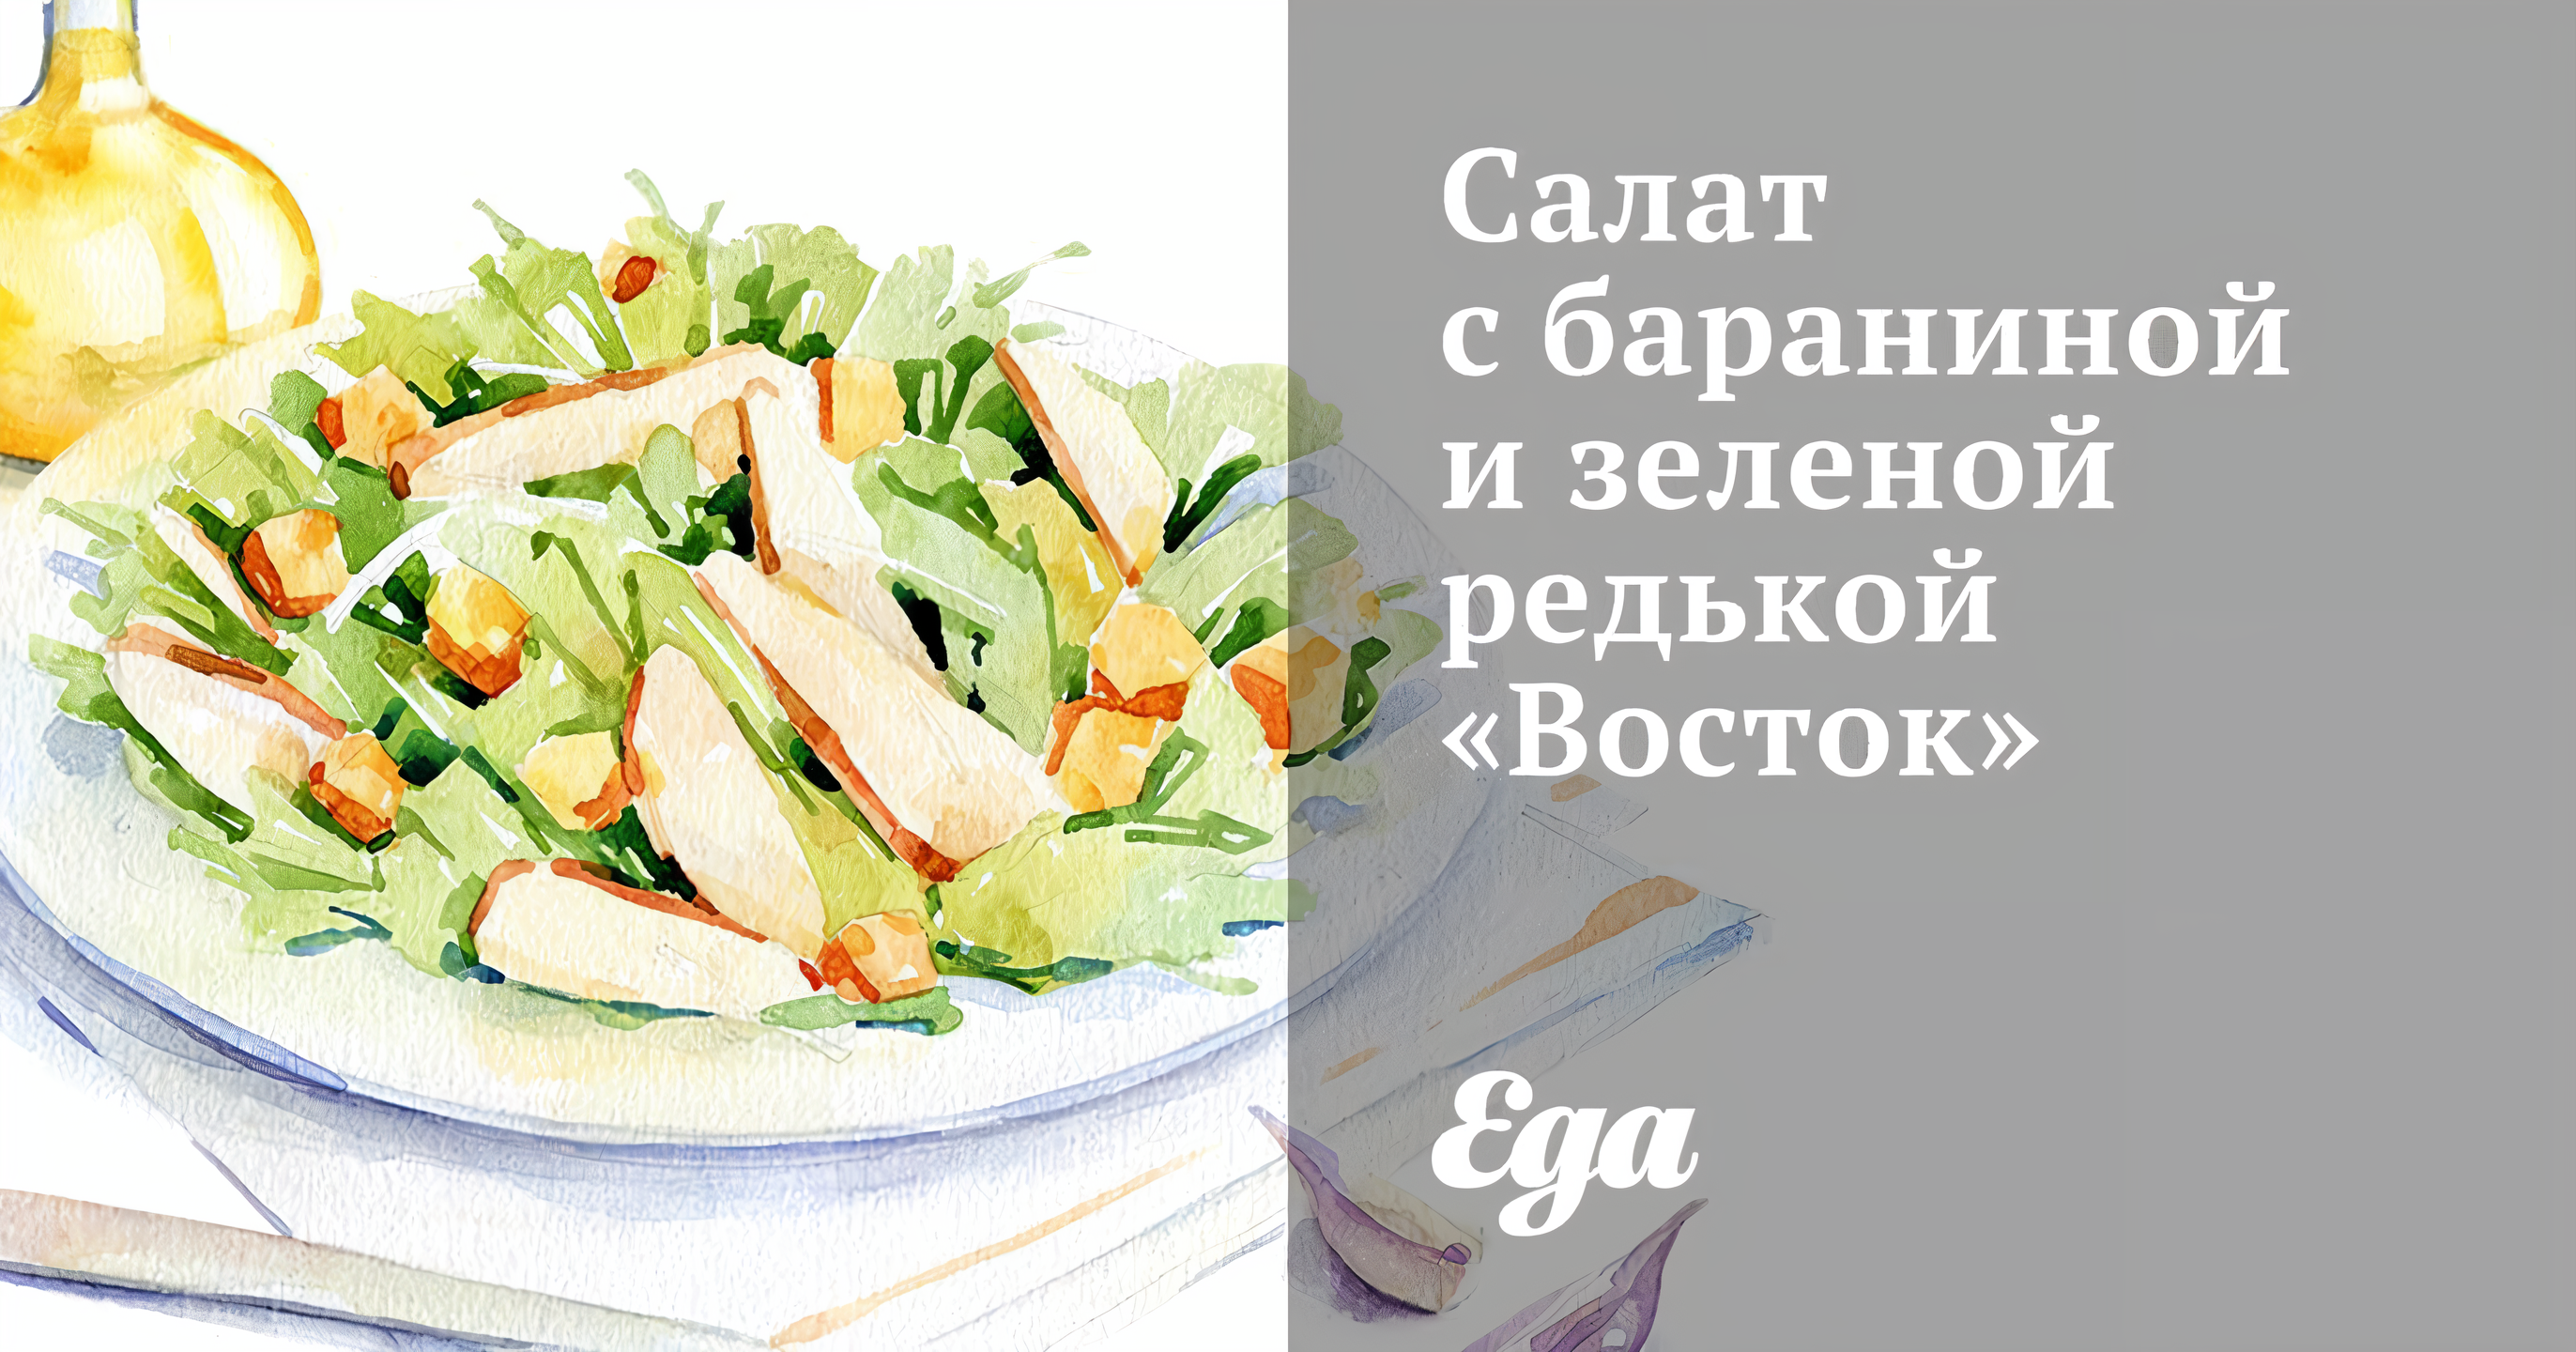 Салат с бараниной и зеленой редькой «Восток»